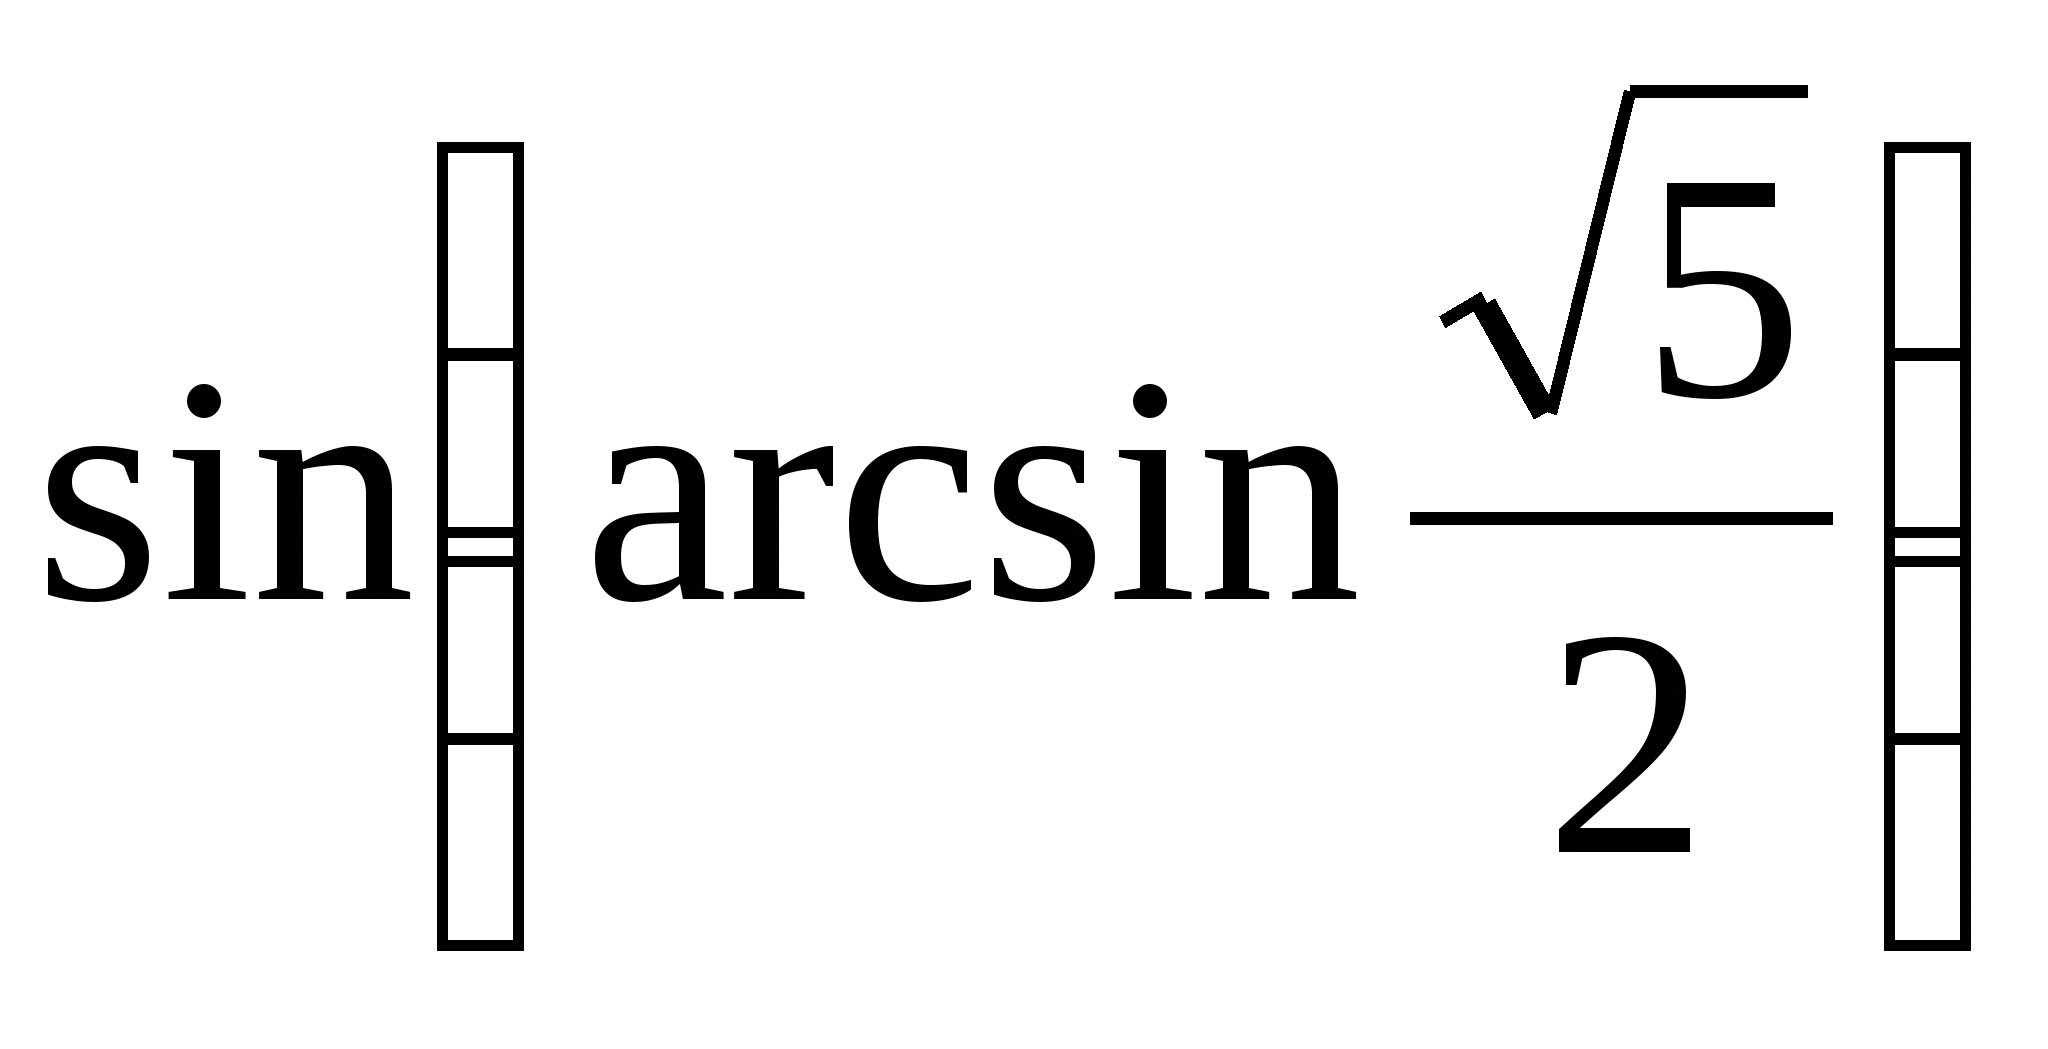 Урок по математике Арксинус (10 общеобразовательный класс)